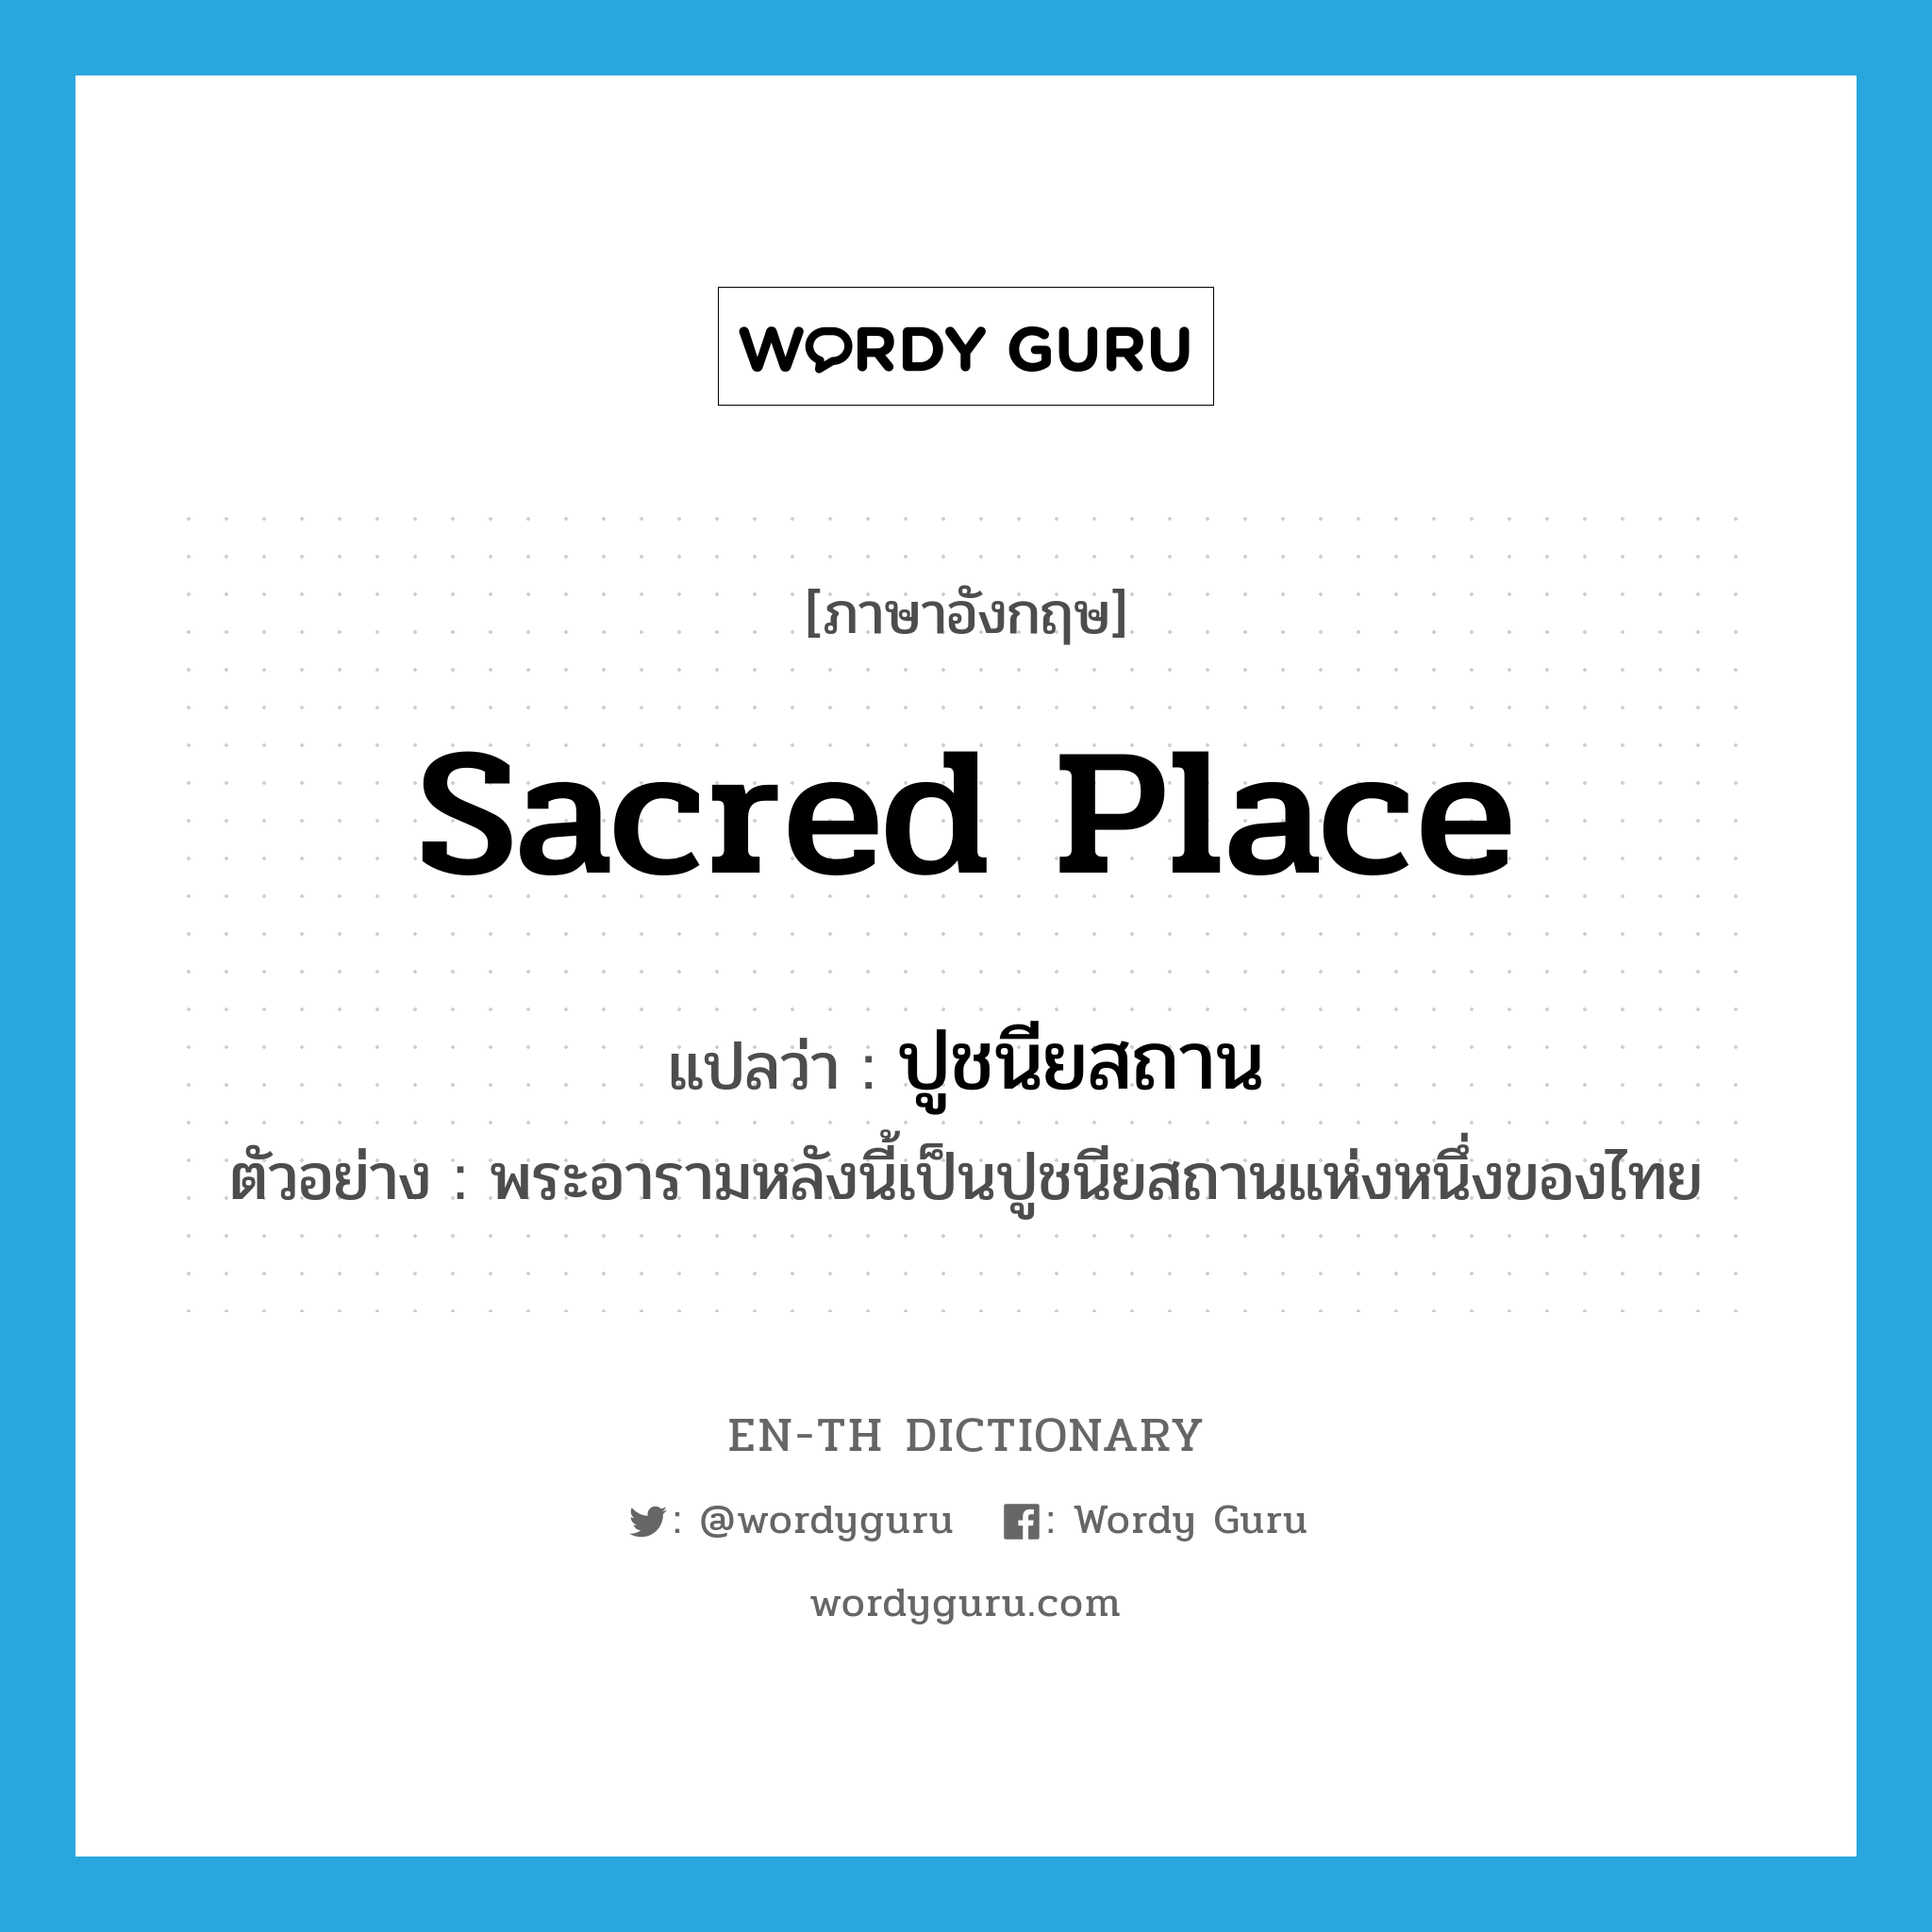 sacred place แปลว่า?, คำศัพท์ภาษาอังกฤษ sacred place แปลว่า ปูชนียสถาน ประเภท N ตัวอย่าง พระอารามหลังนี้เป็นปูชนียสถานแห่งหนึ่งของไทย หมวด N